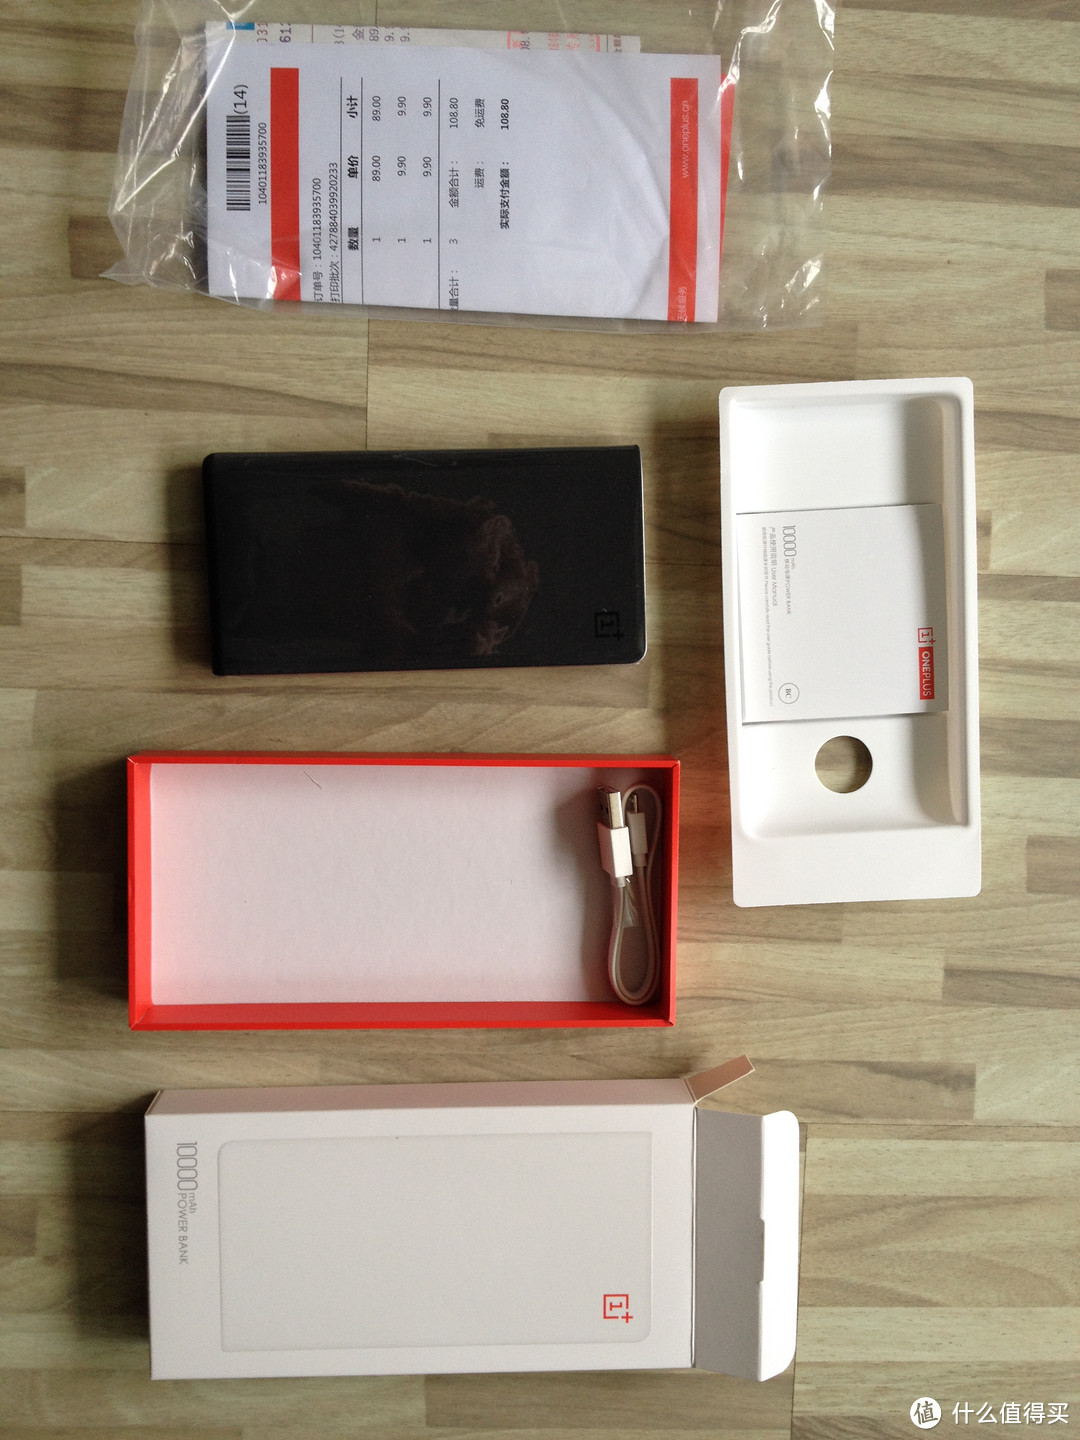 砂岩黑版 OnePlus 一加来电 移动电源